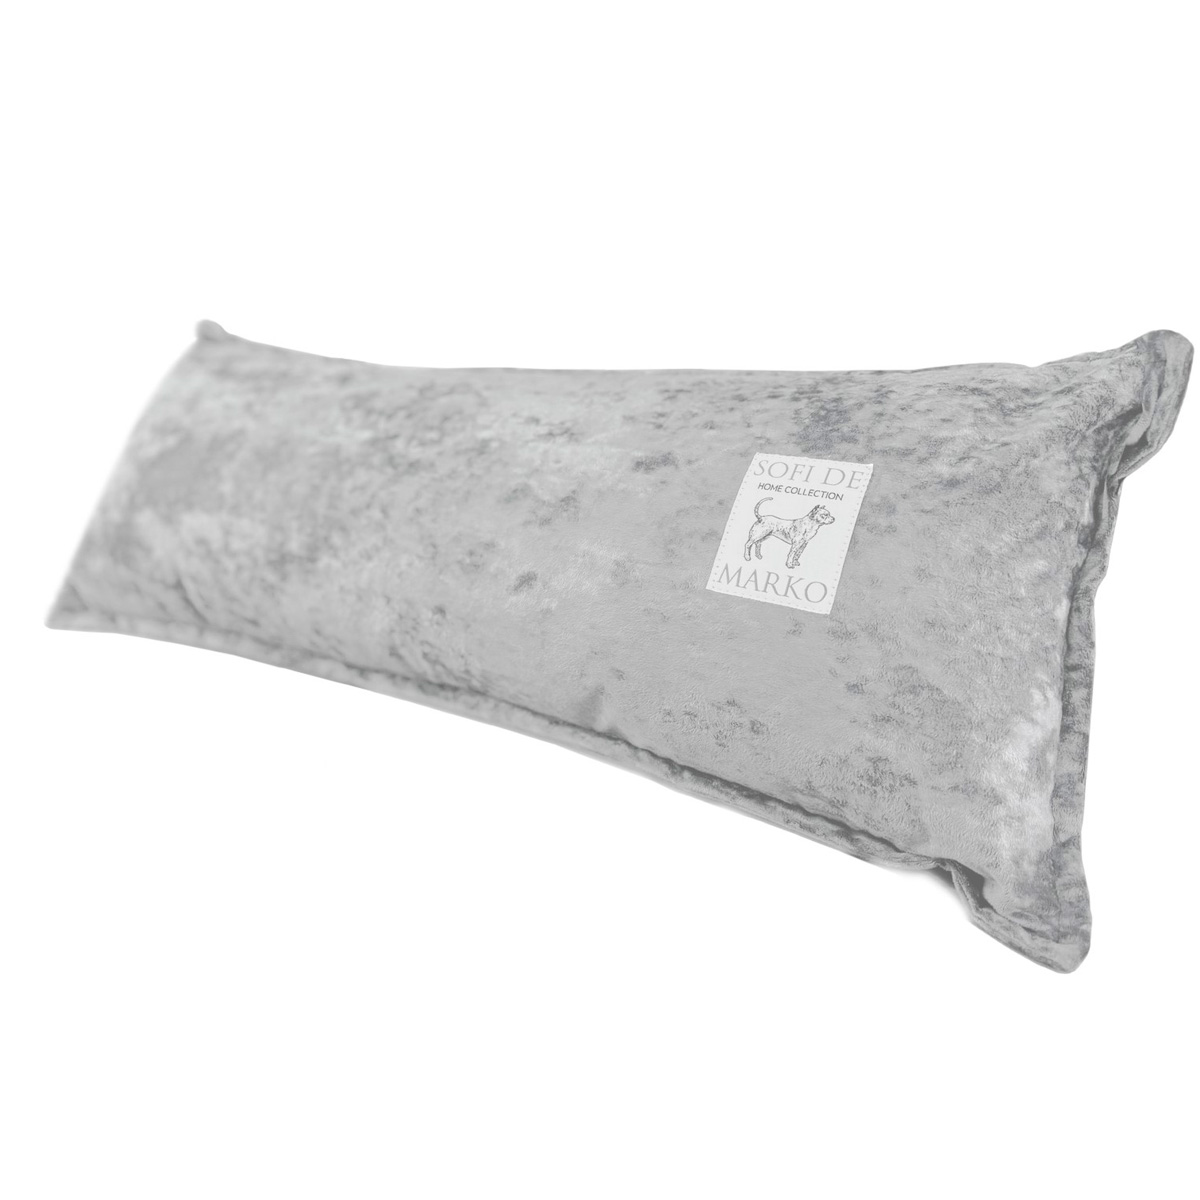 Подушка декоративная Sofi de Marko Брайан 32x90см, цвет светлый серый одеяло sofi de marko п 0010 2 0